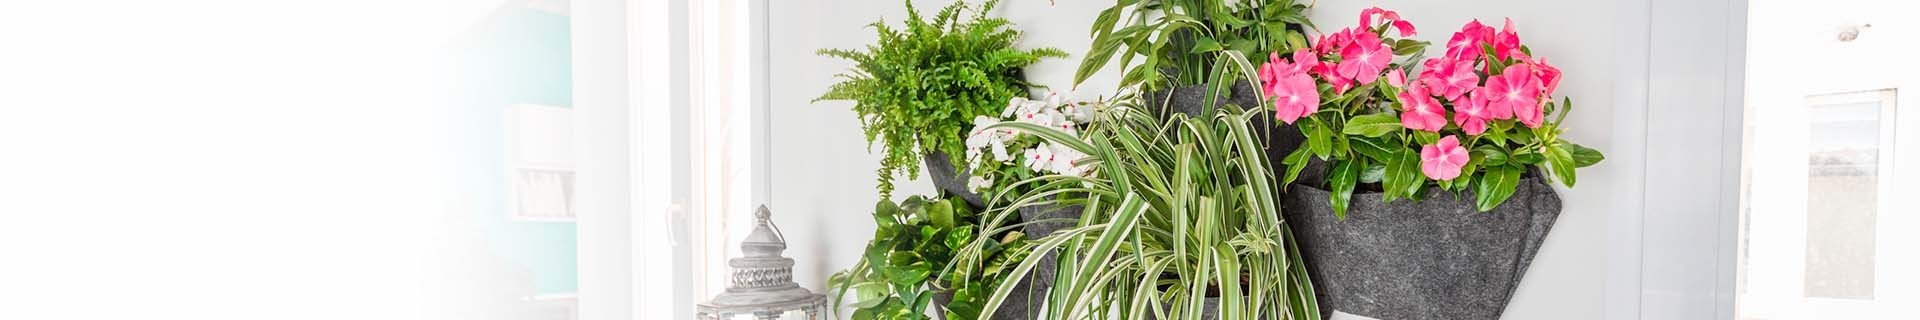 Vasi da parete per piante da Interno o da esterno | CitySens 